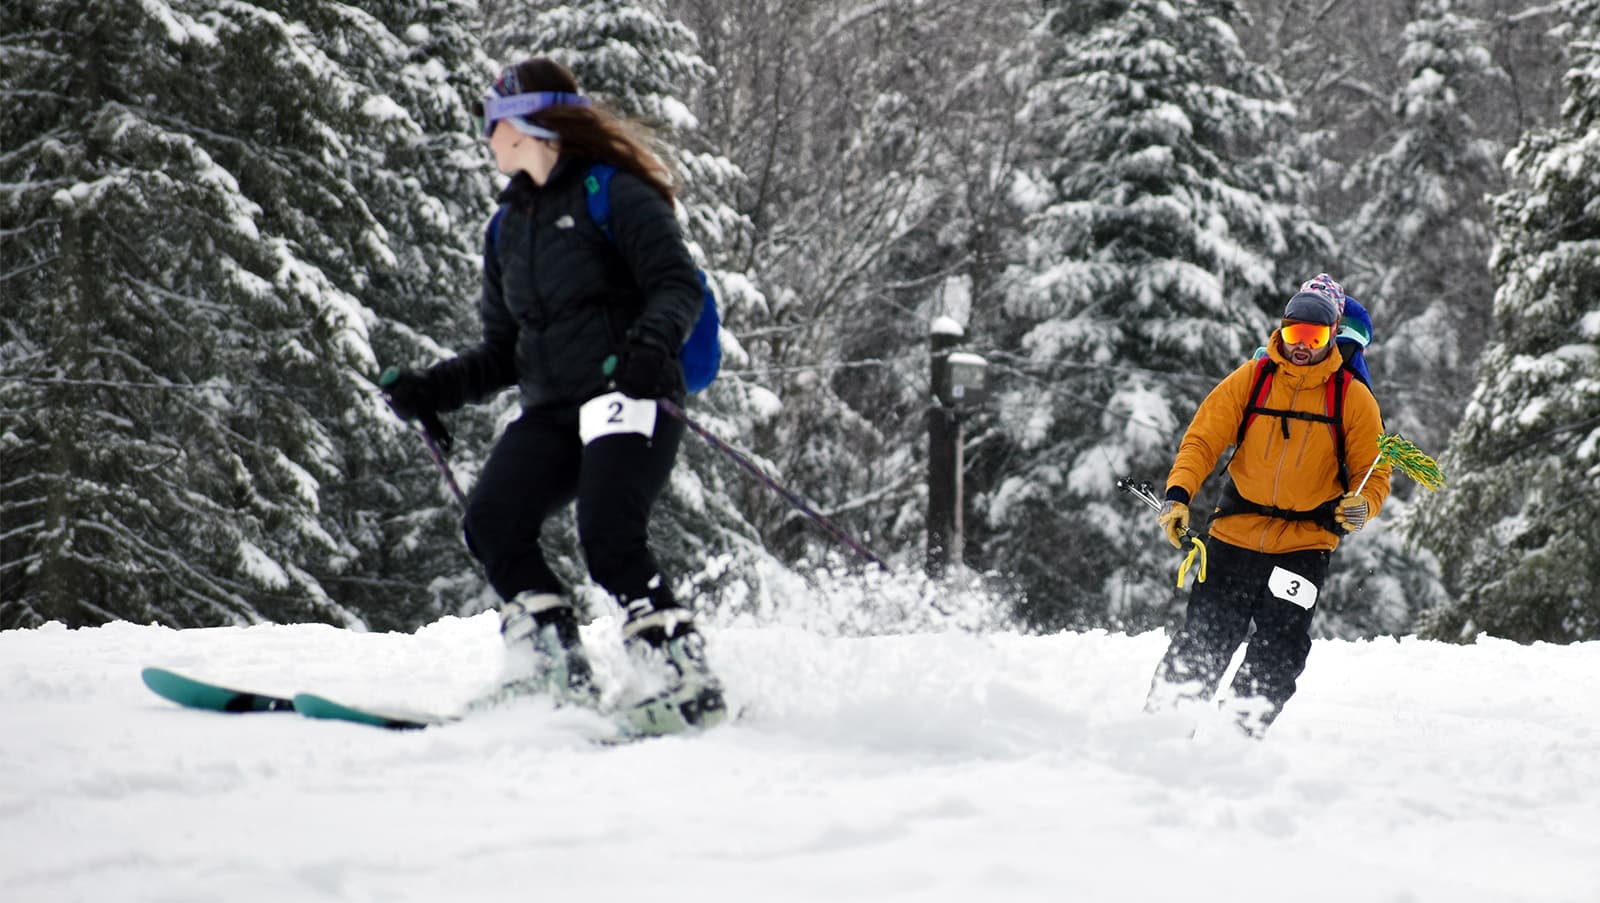 a family downhill ski together at the 2022 ski-shoe-ski event